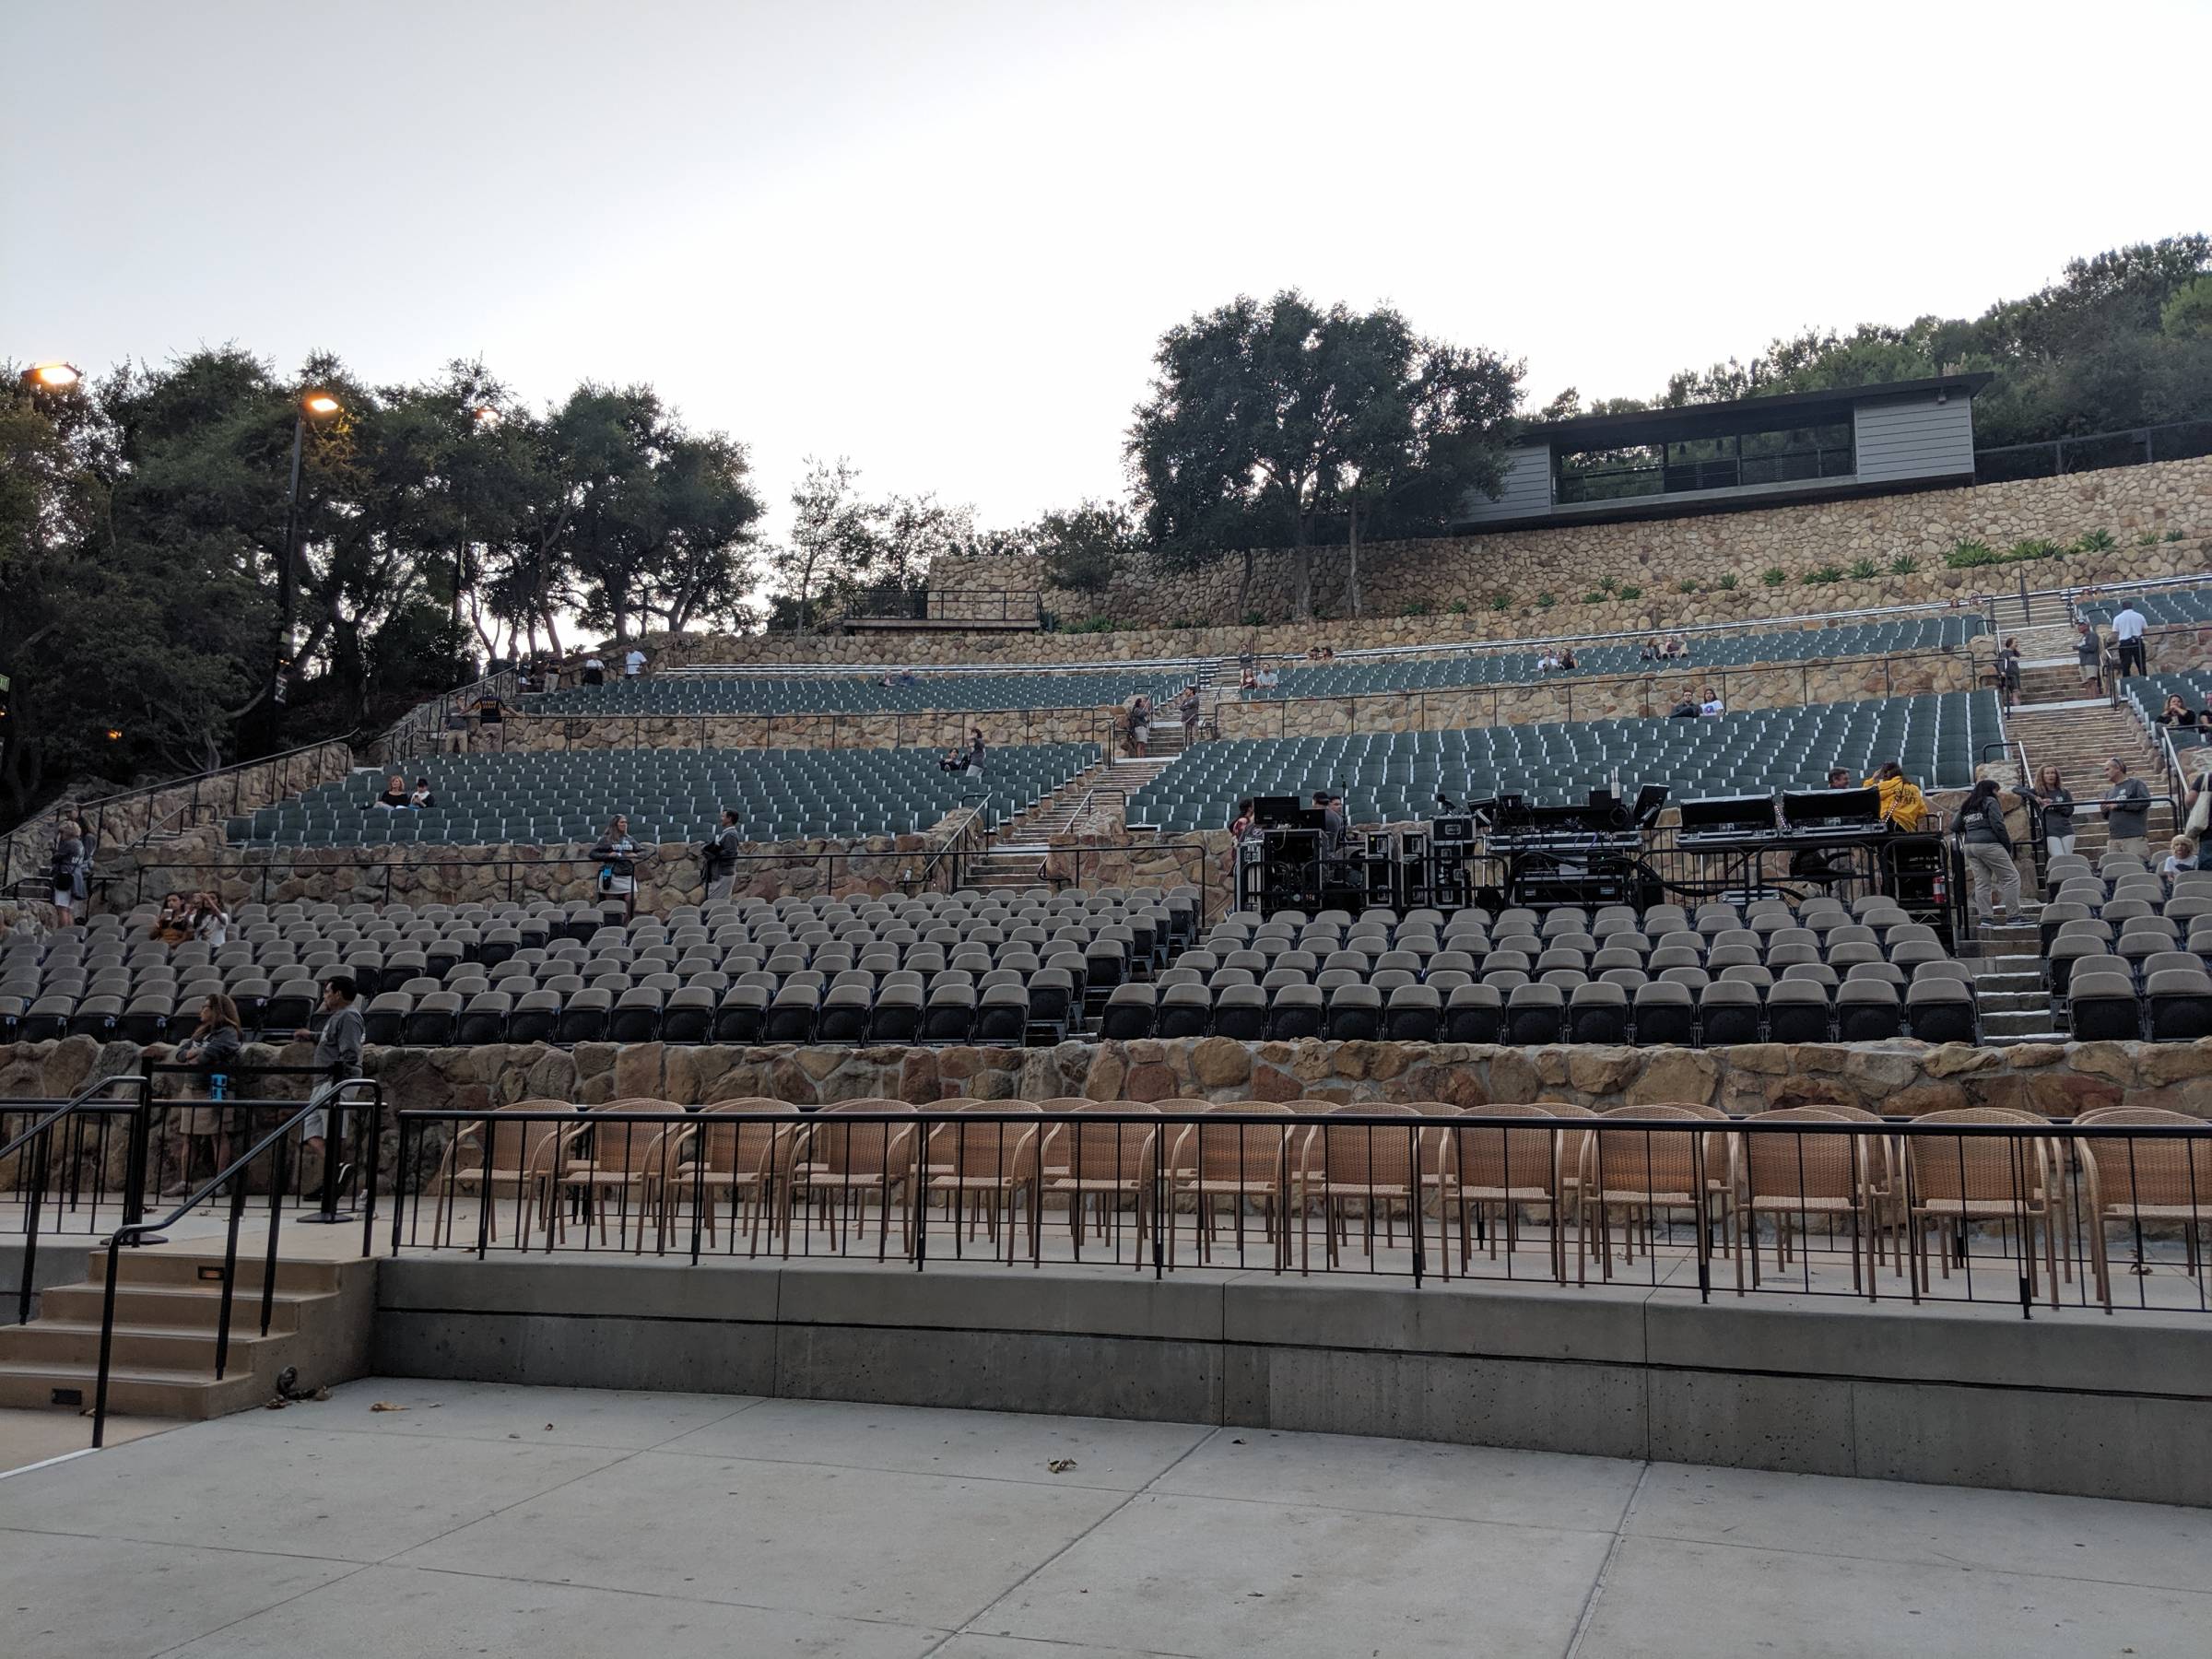 Seating levels at Santa Barbara Bowl